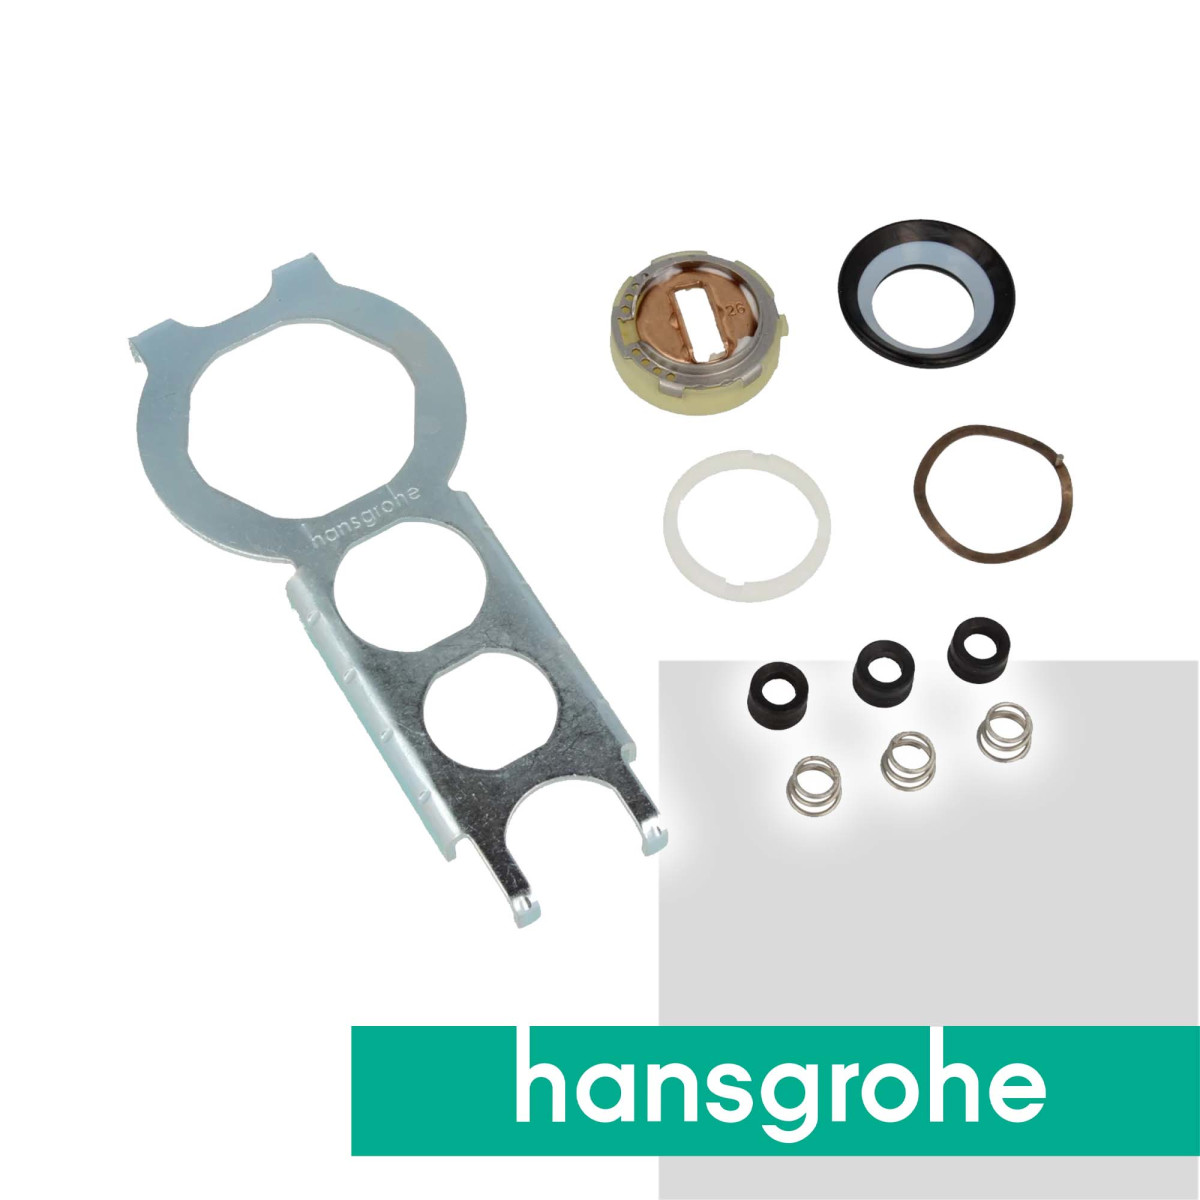 hansgrohe Dichtung-Set Service-Set für ND-Einhebel-Armaturen